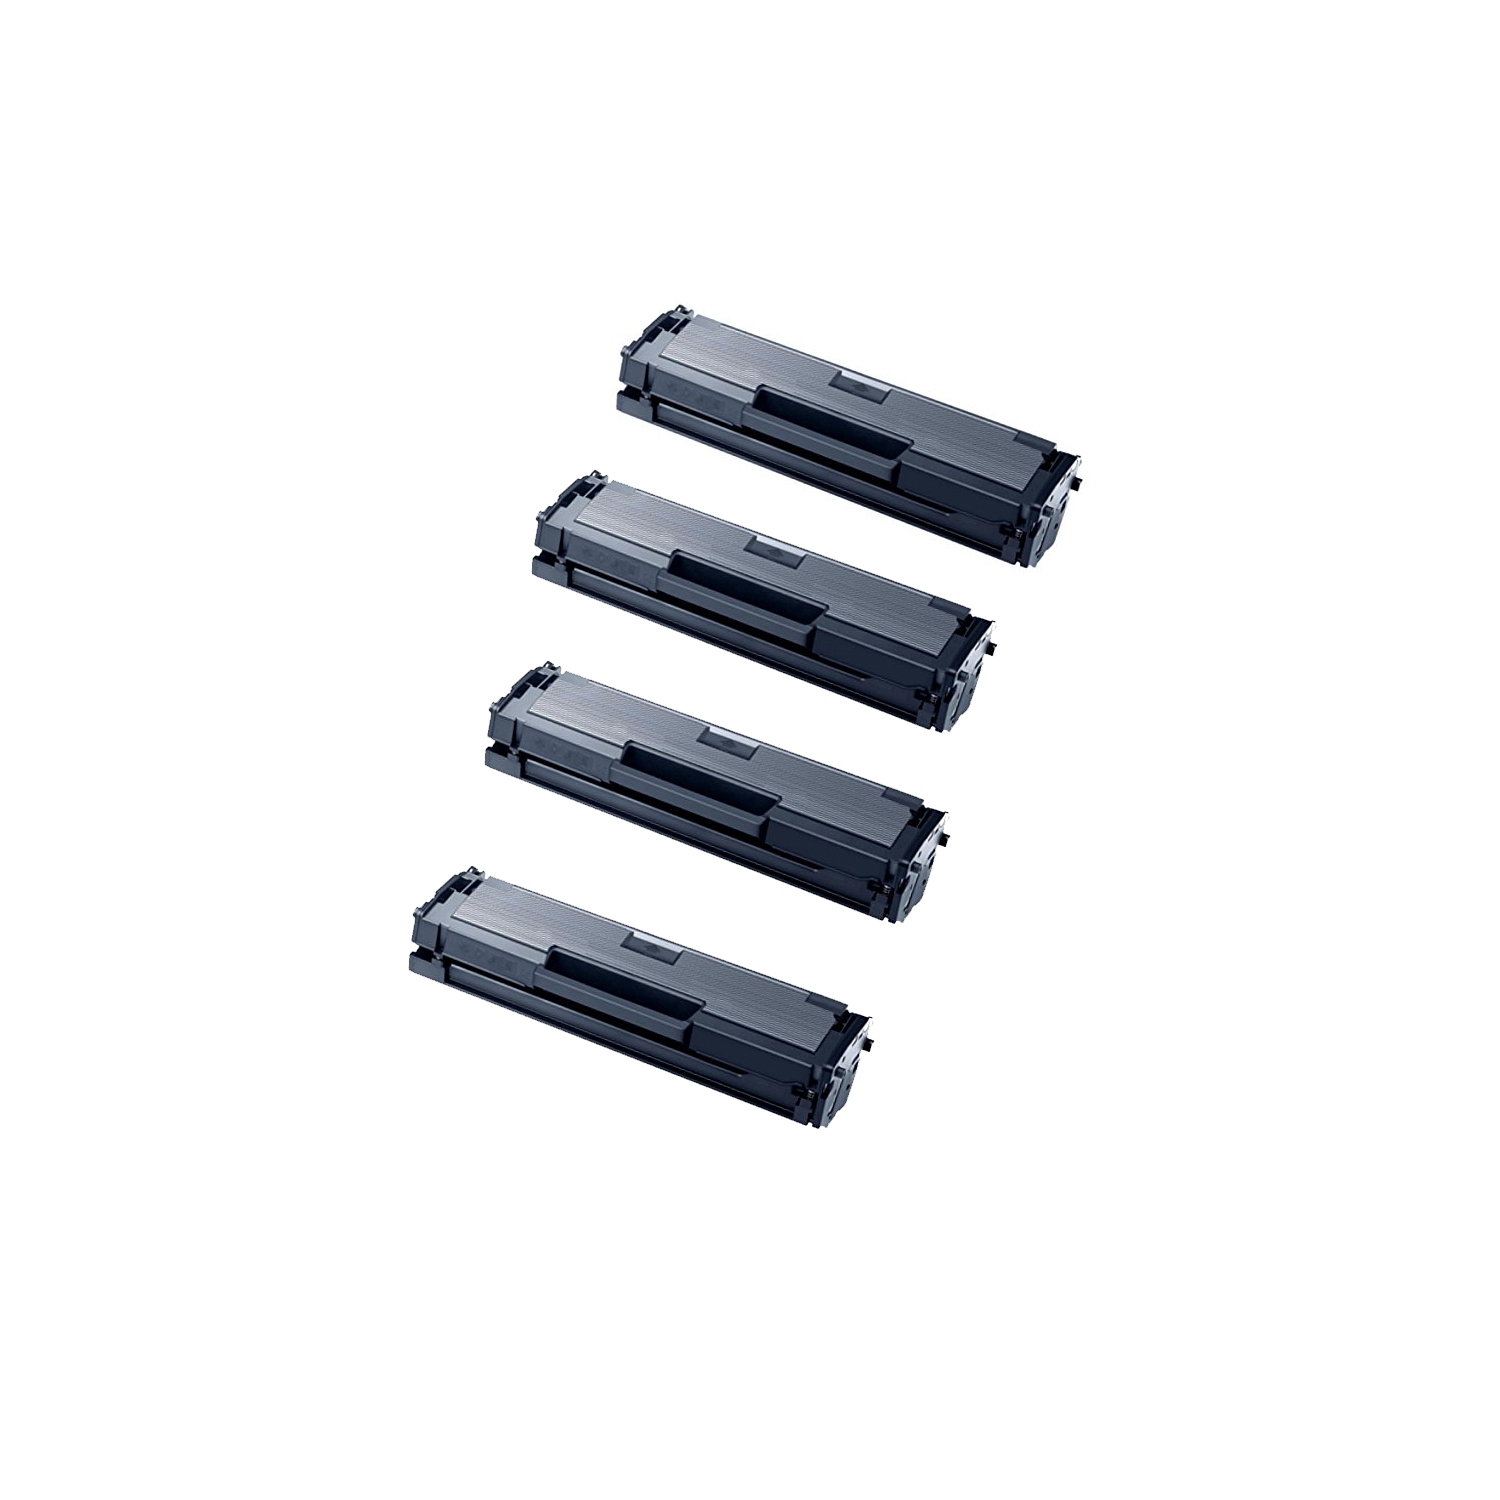 4Pack Toner Cartridges Compatible for Samsung MLT-D111S,MLT-D111S D111S Xpress M2020 M2020W M2021 M2021W M2022 M2022W M2070